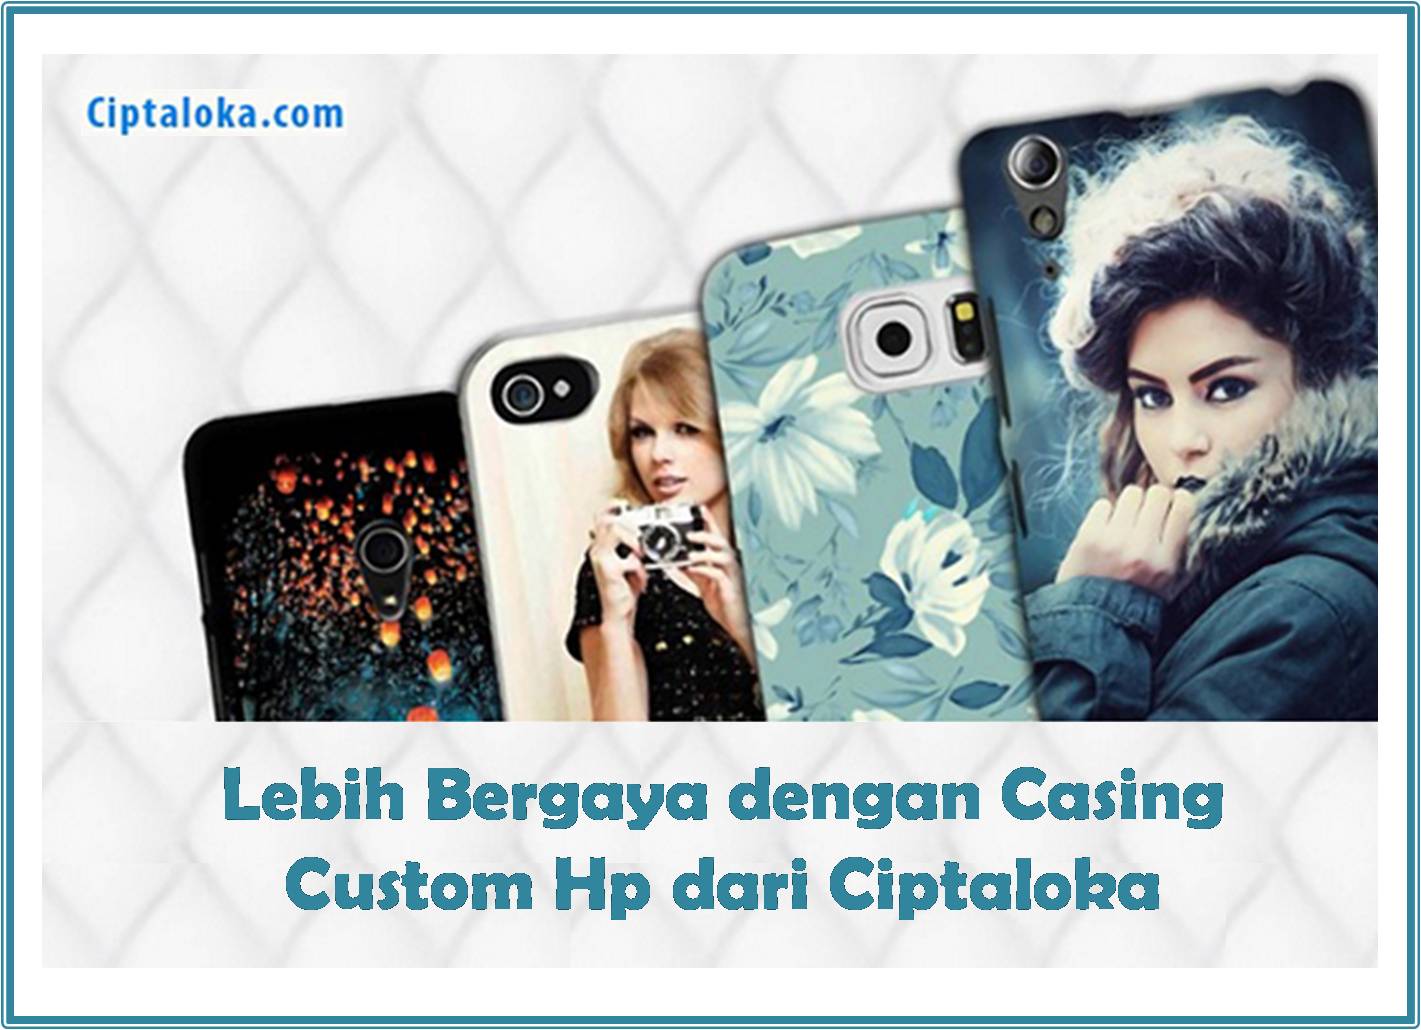 casing custom handphone ciptaloka